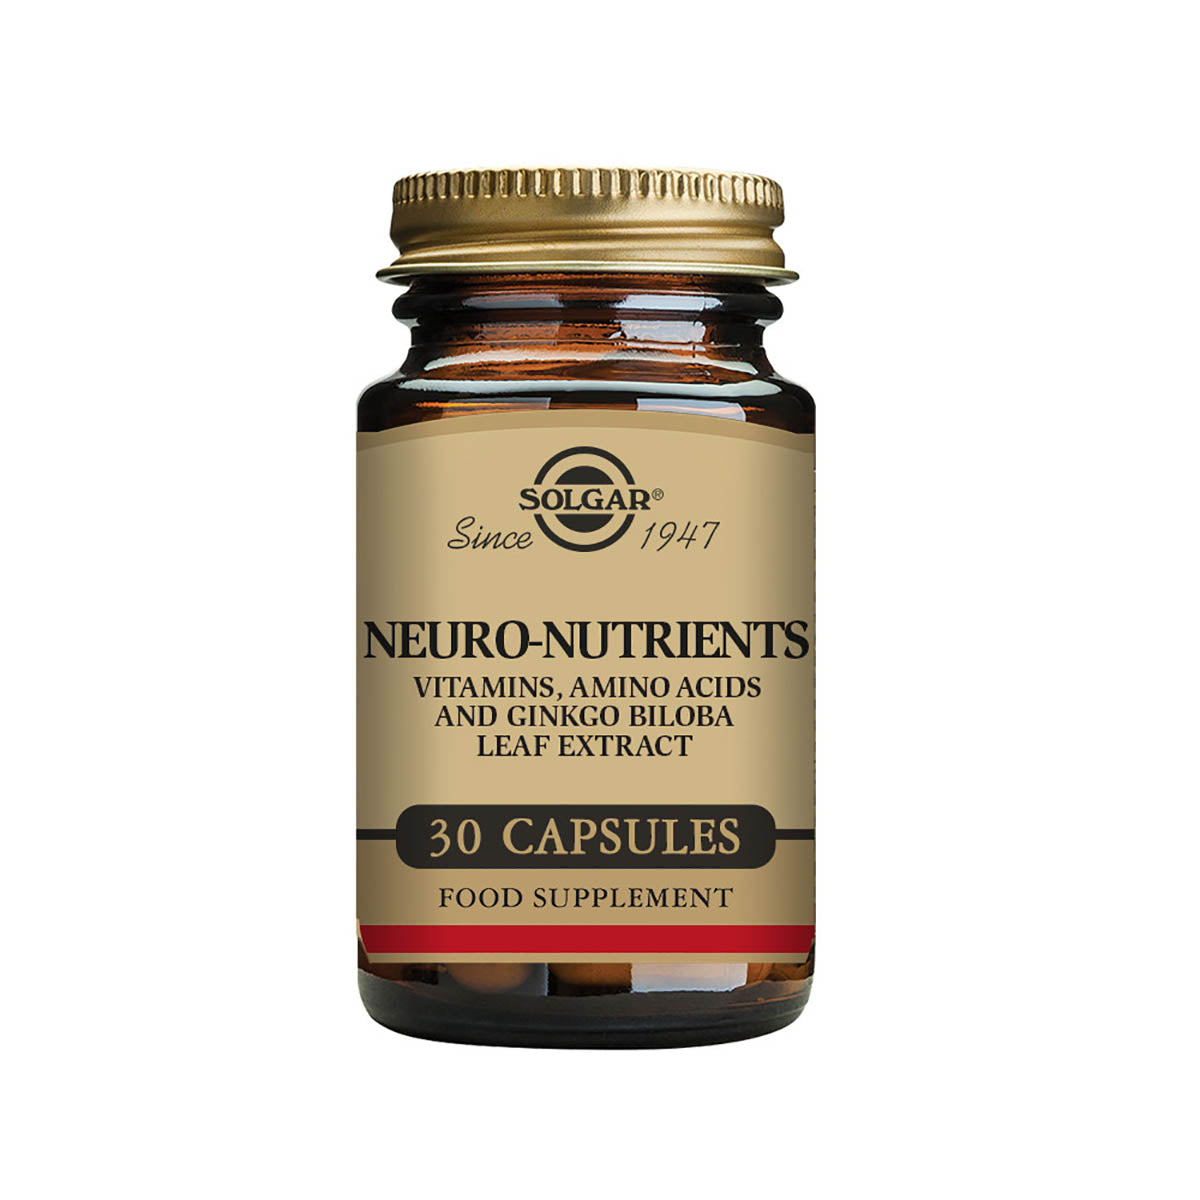 Solgar® Neuro-Nutrients Vegetable Capsules - Pack of 30